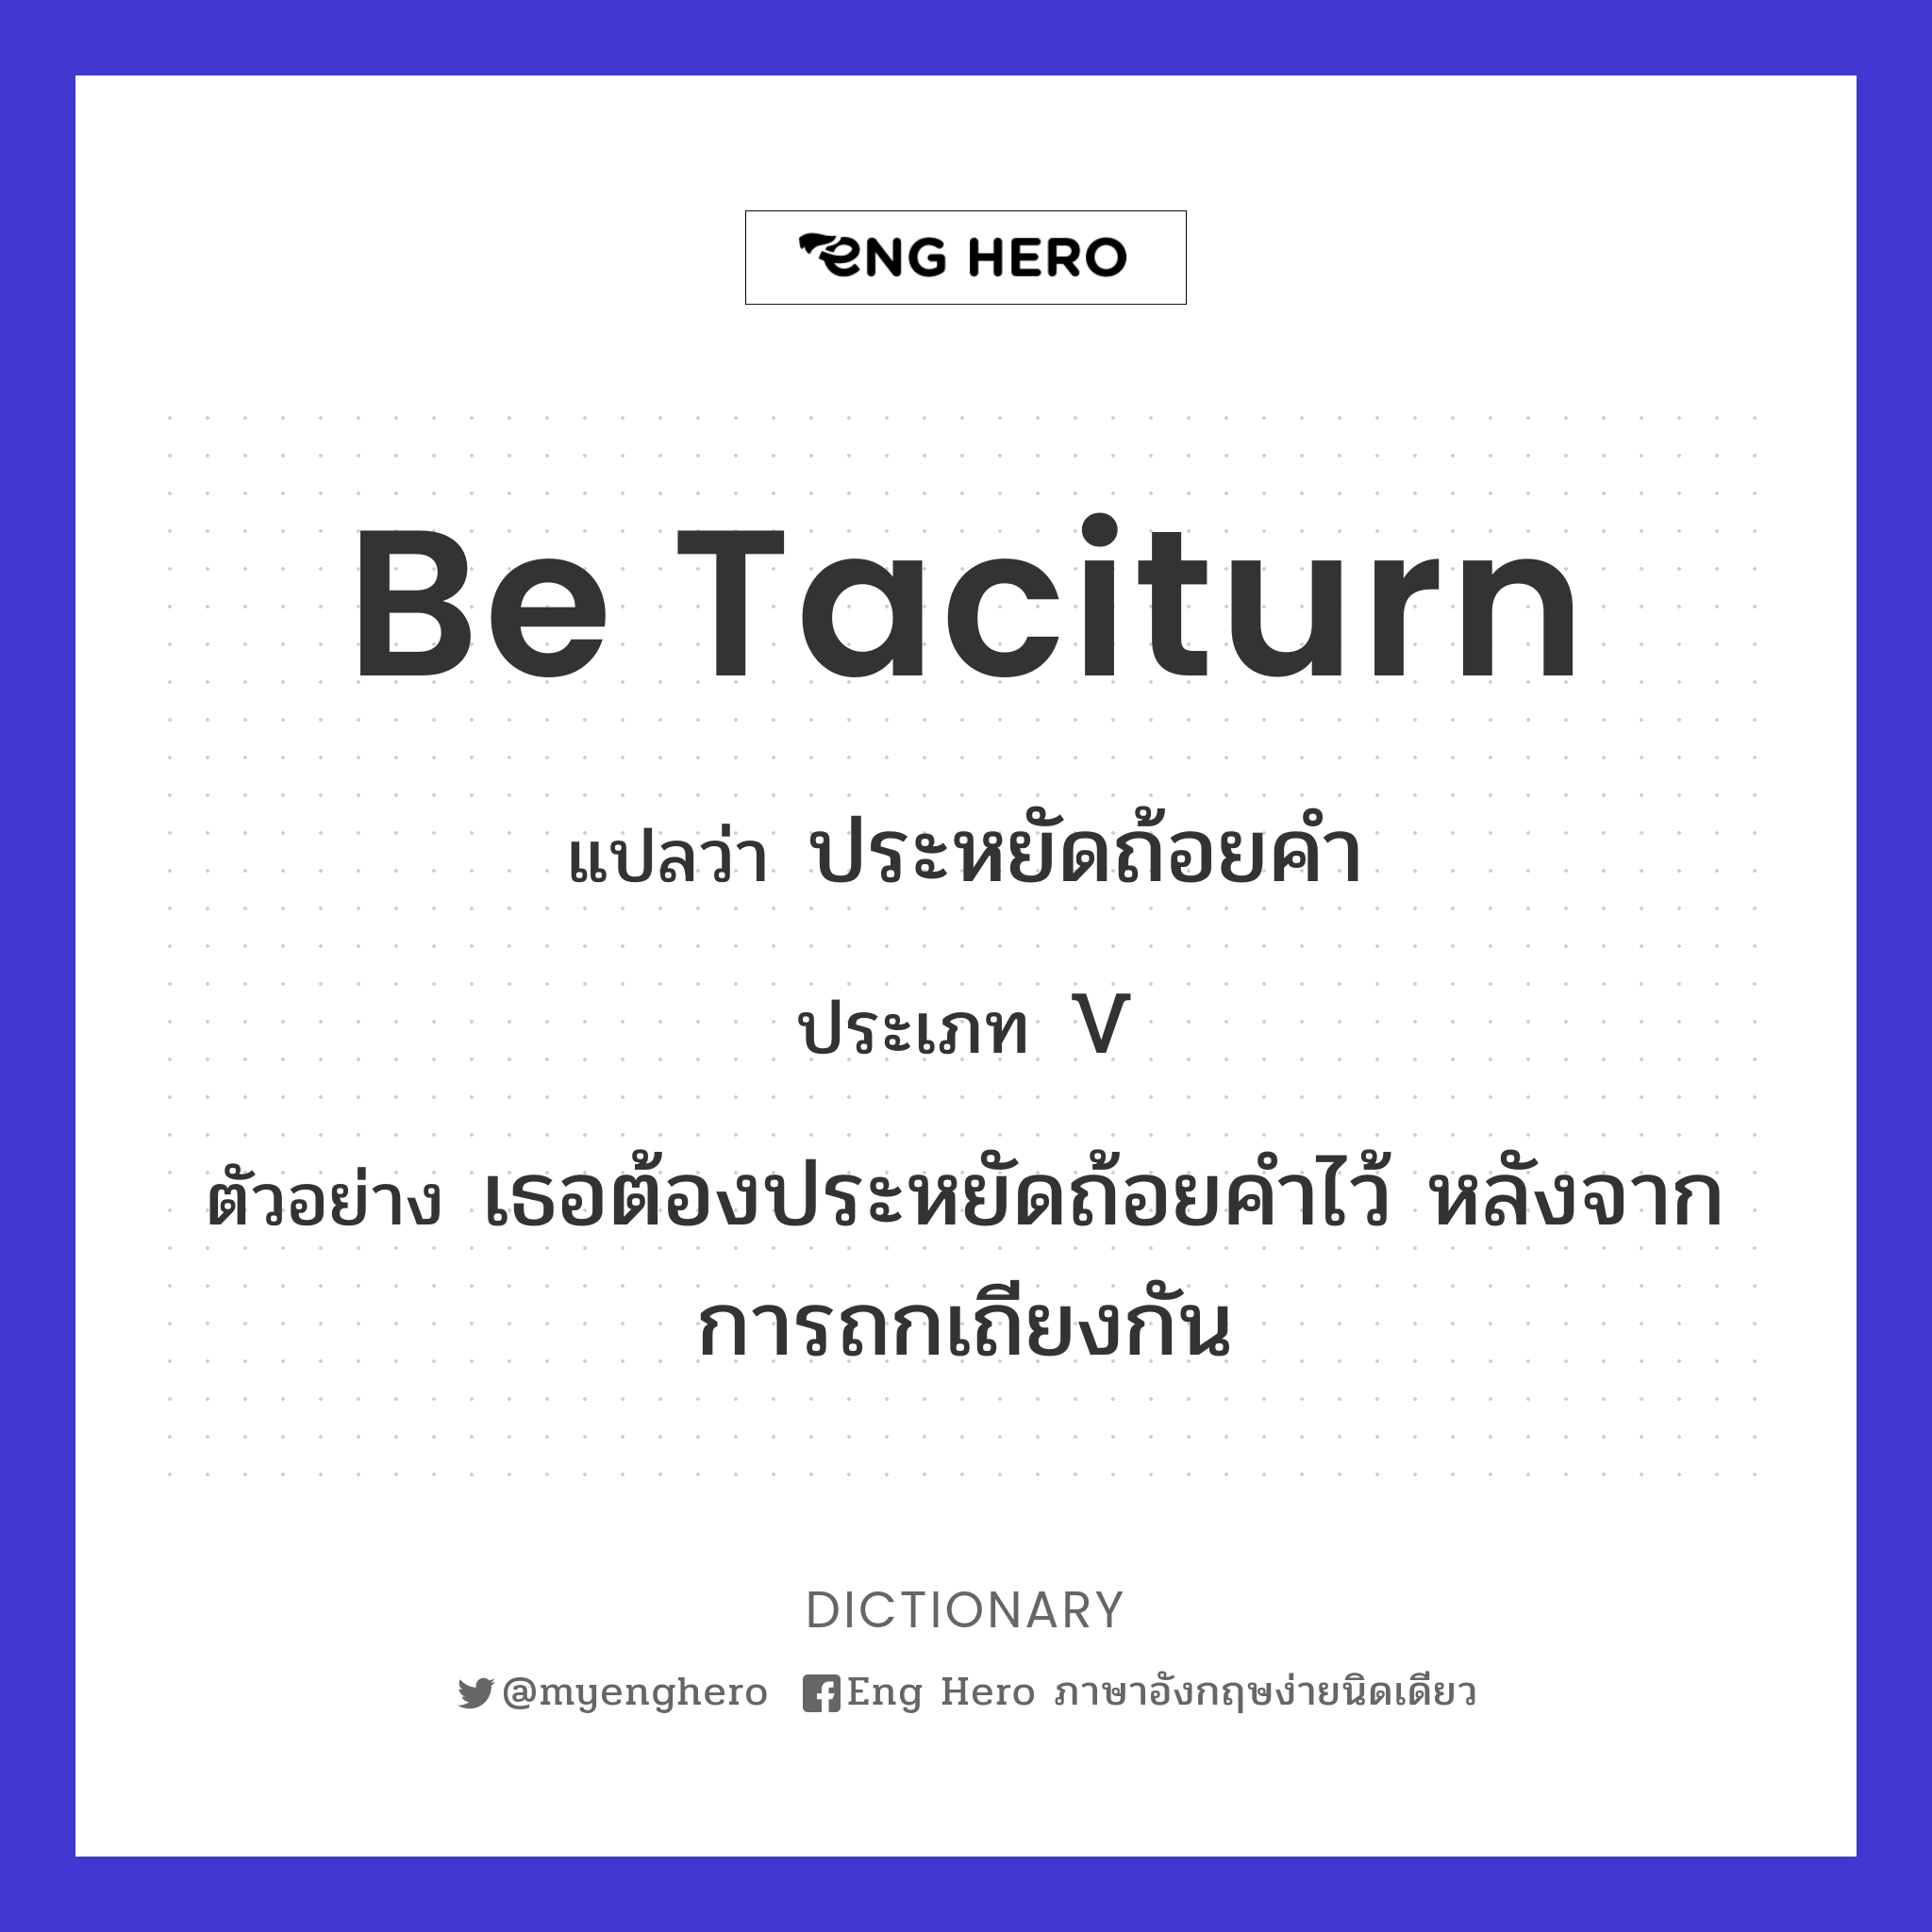 be taciturn